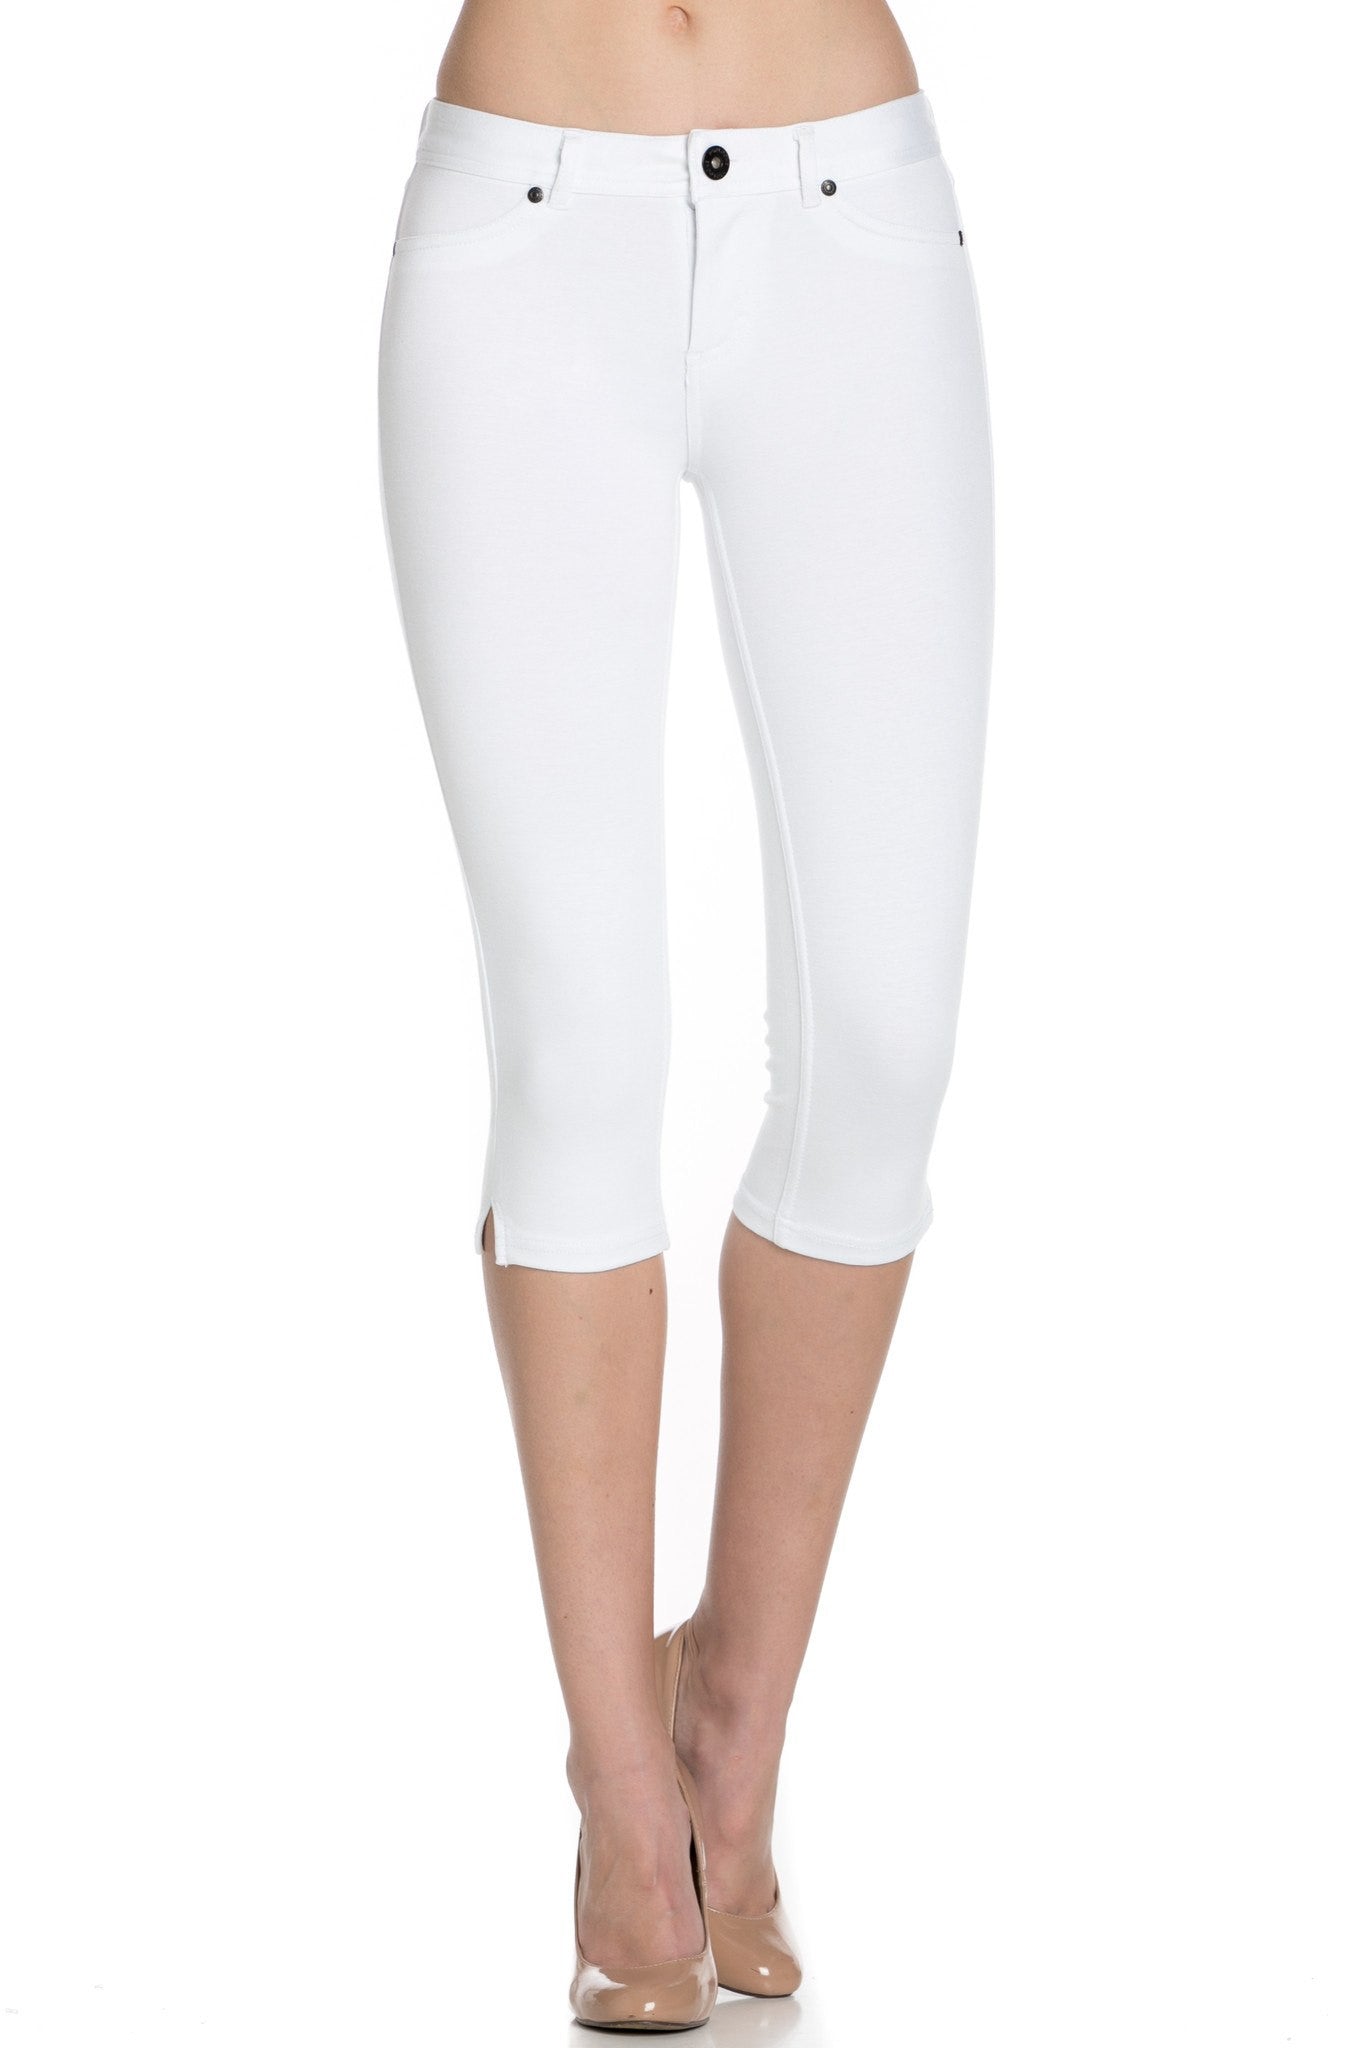 Capris Ultra Stretch Skinny Pants in White – AB SKINNY